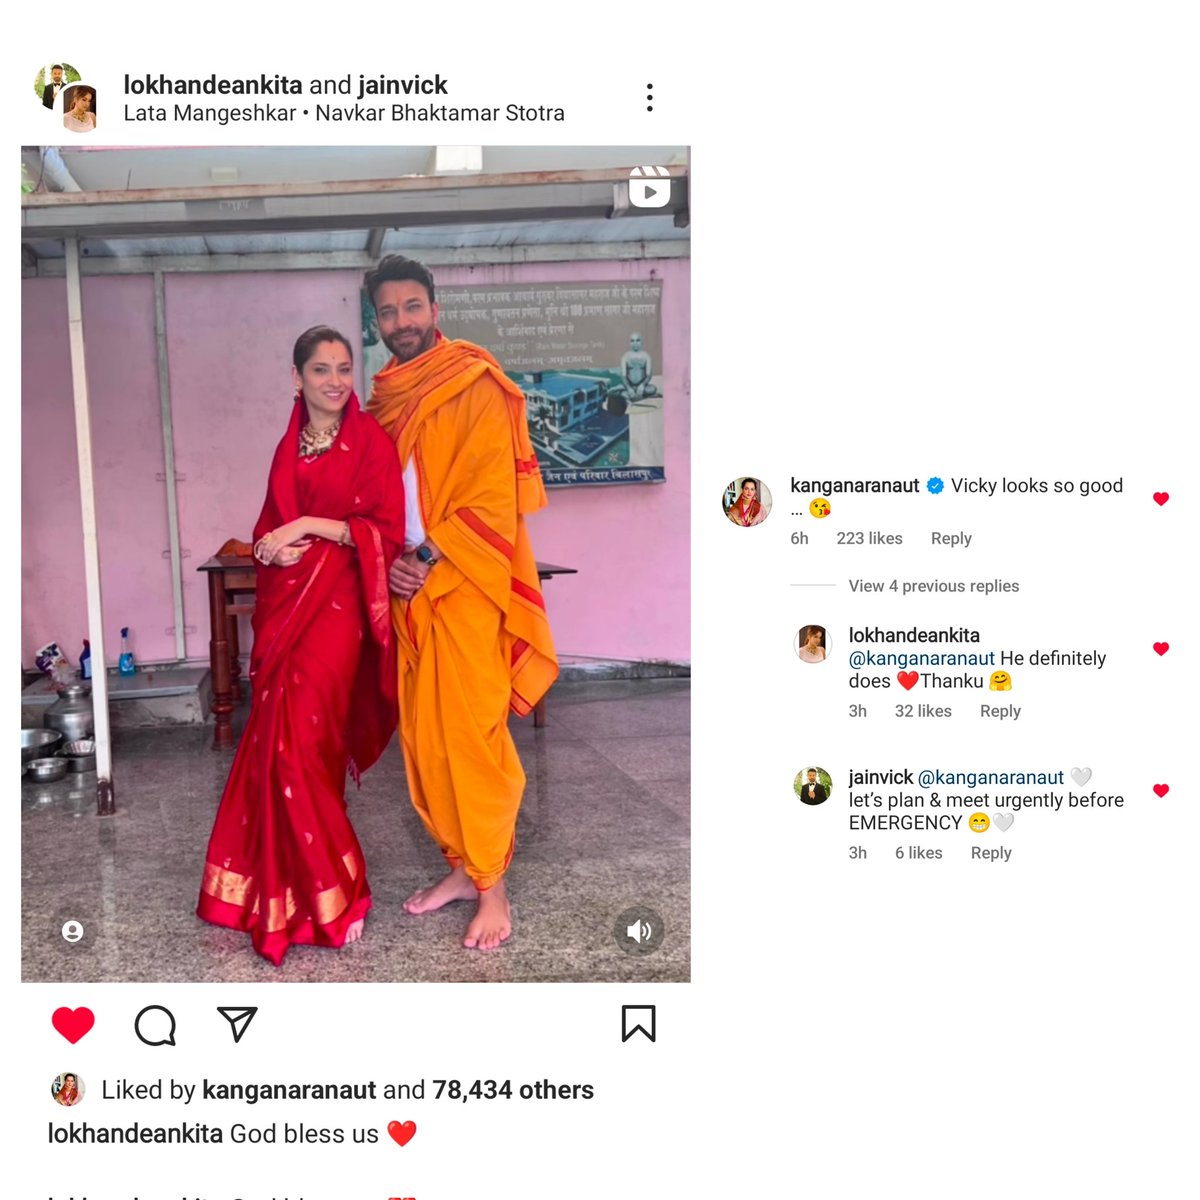 queen kr commented on mr and mrs Jain's latest post. 🫶

#KanganaRanaut 

@anky1912 | #AnkitaLokhandeJain #AnkitaLokhande #VickyJain #AnViKiKahani